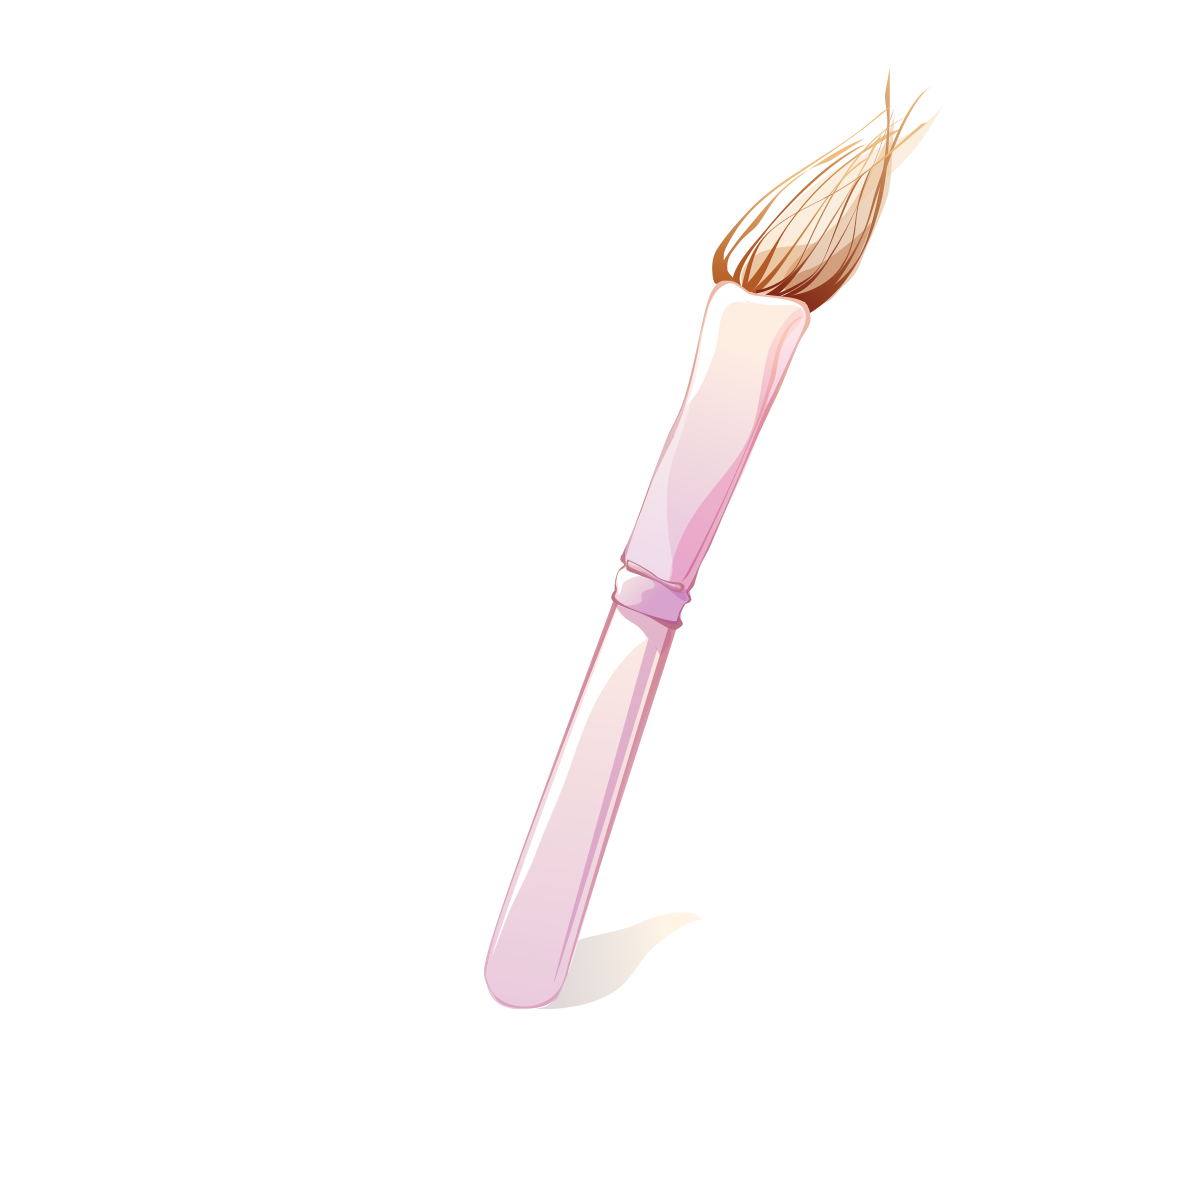 pen clipart pink pen